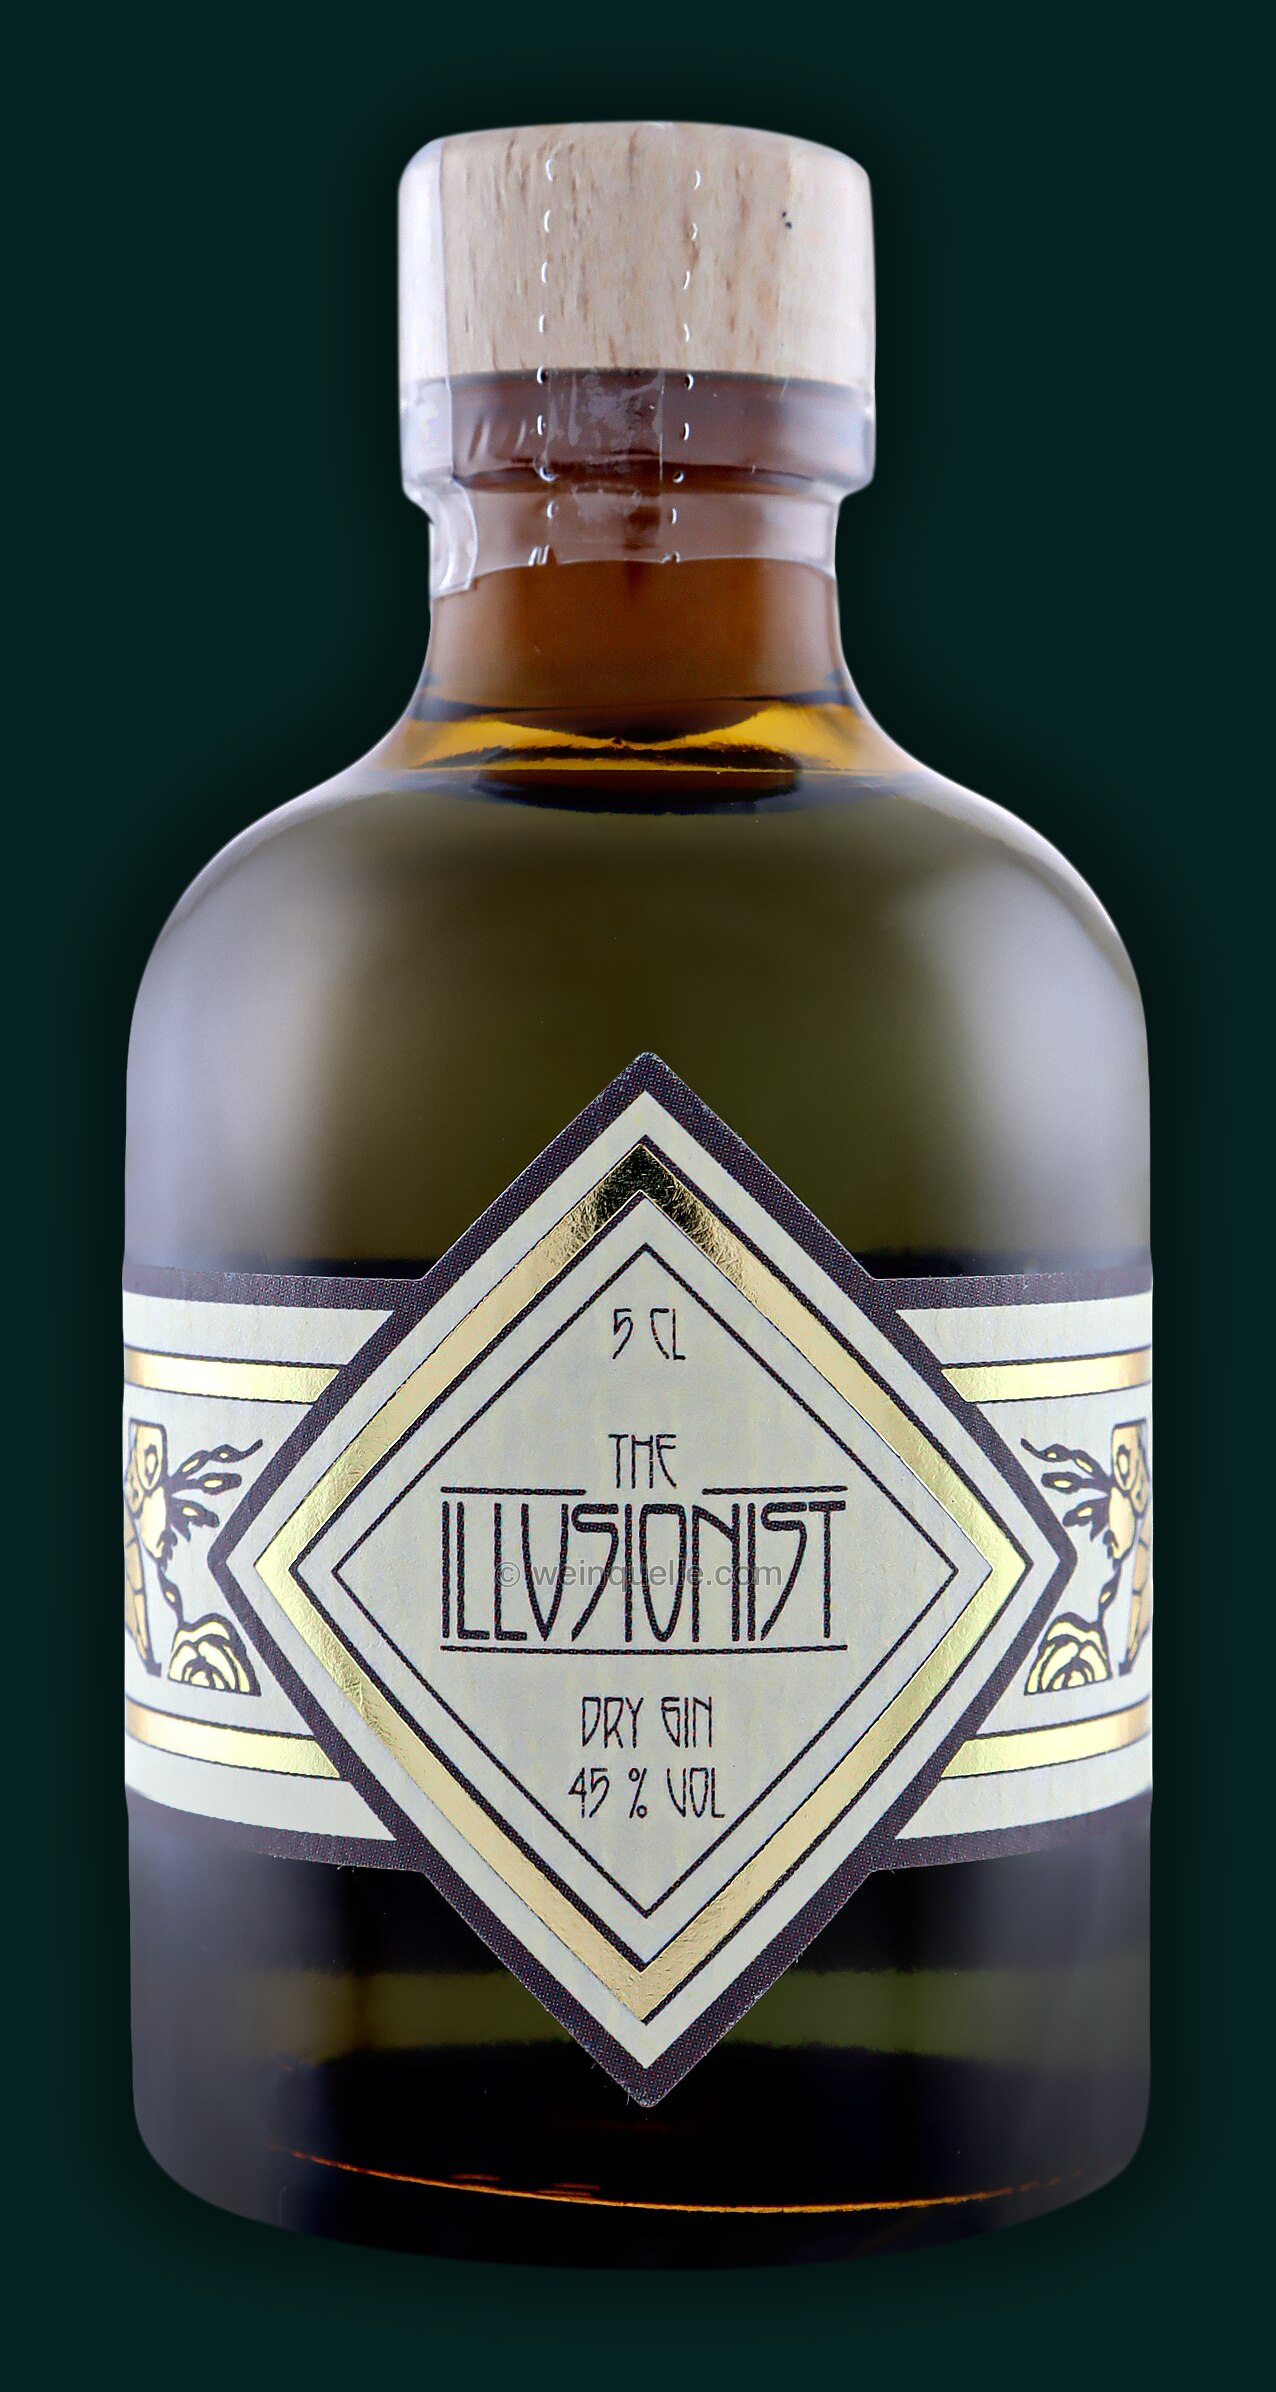 The Illusionist Dry Gin 7,00 Lühmann - € Liter, 0,05 Weinquelle